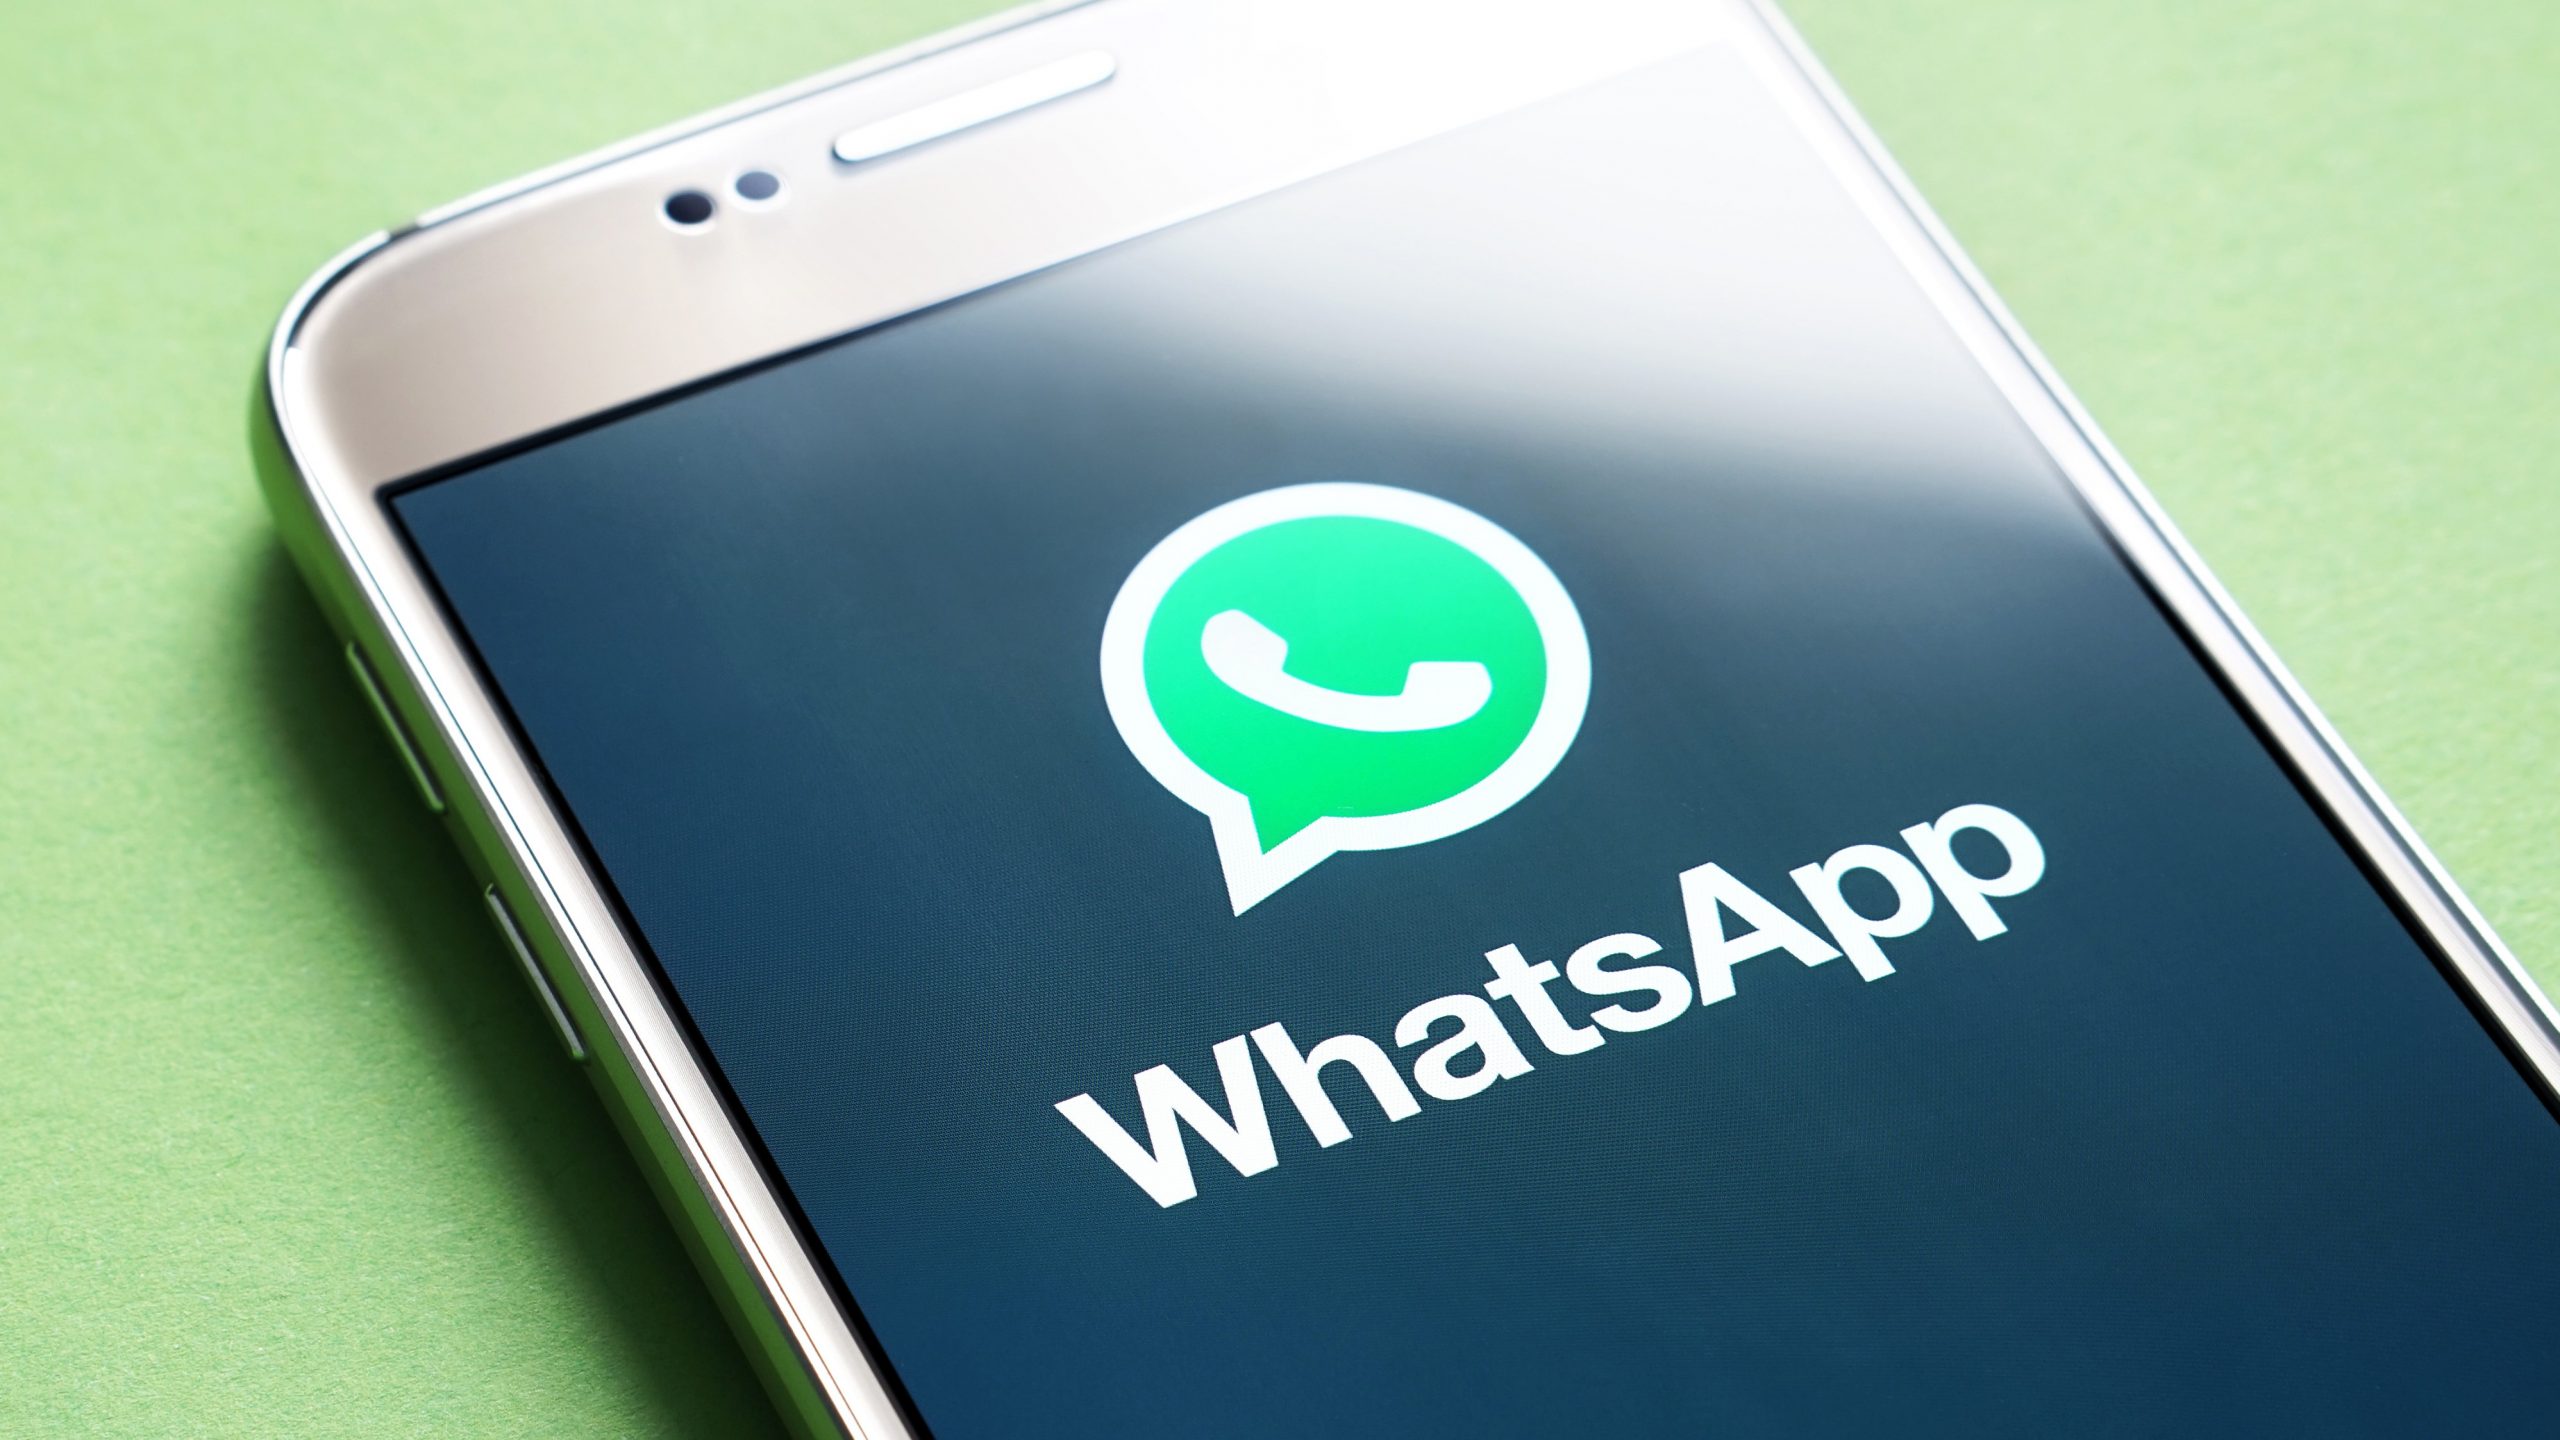 How Does Whatsapp Work